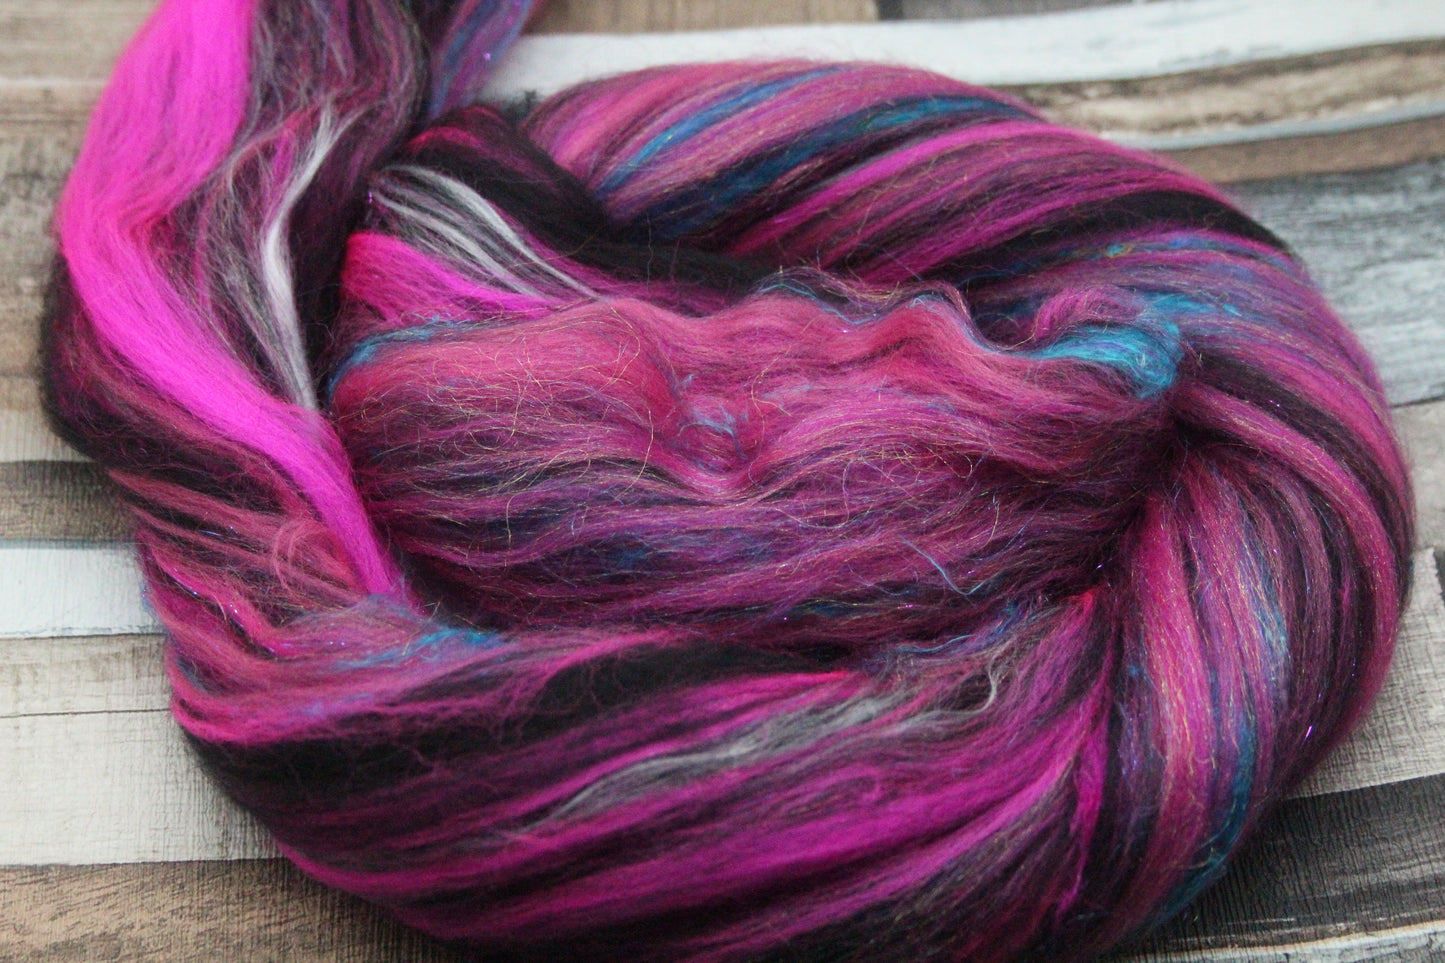 Merino Wool Blend - Pink Black - 32 grams / 1.1 oz  - Fibre for felting, weaving or spinning